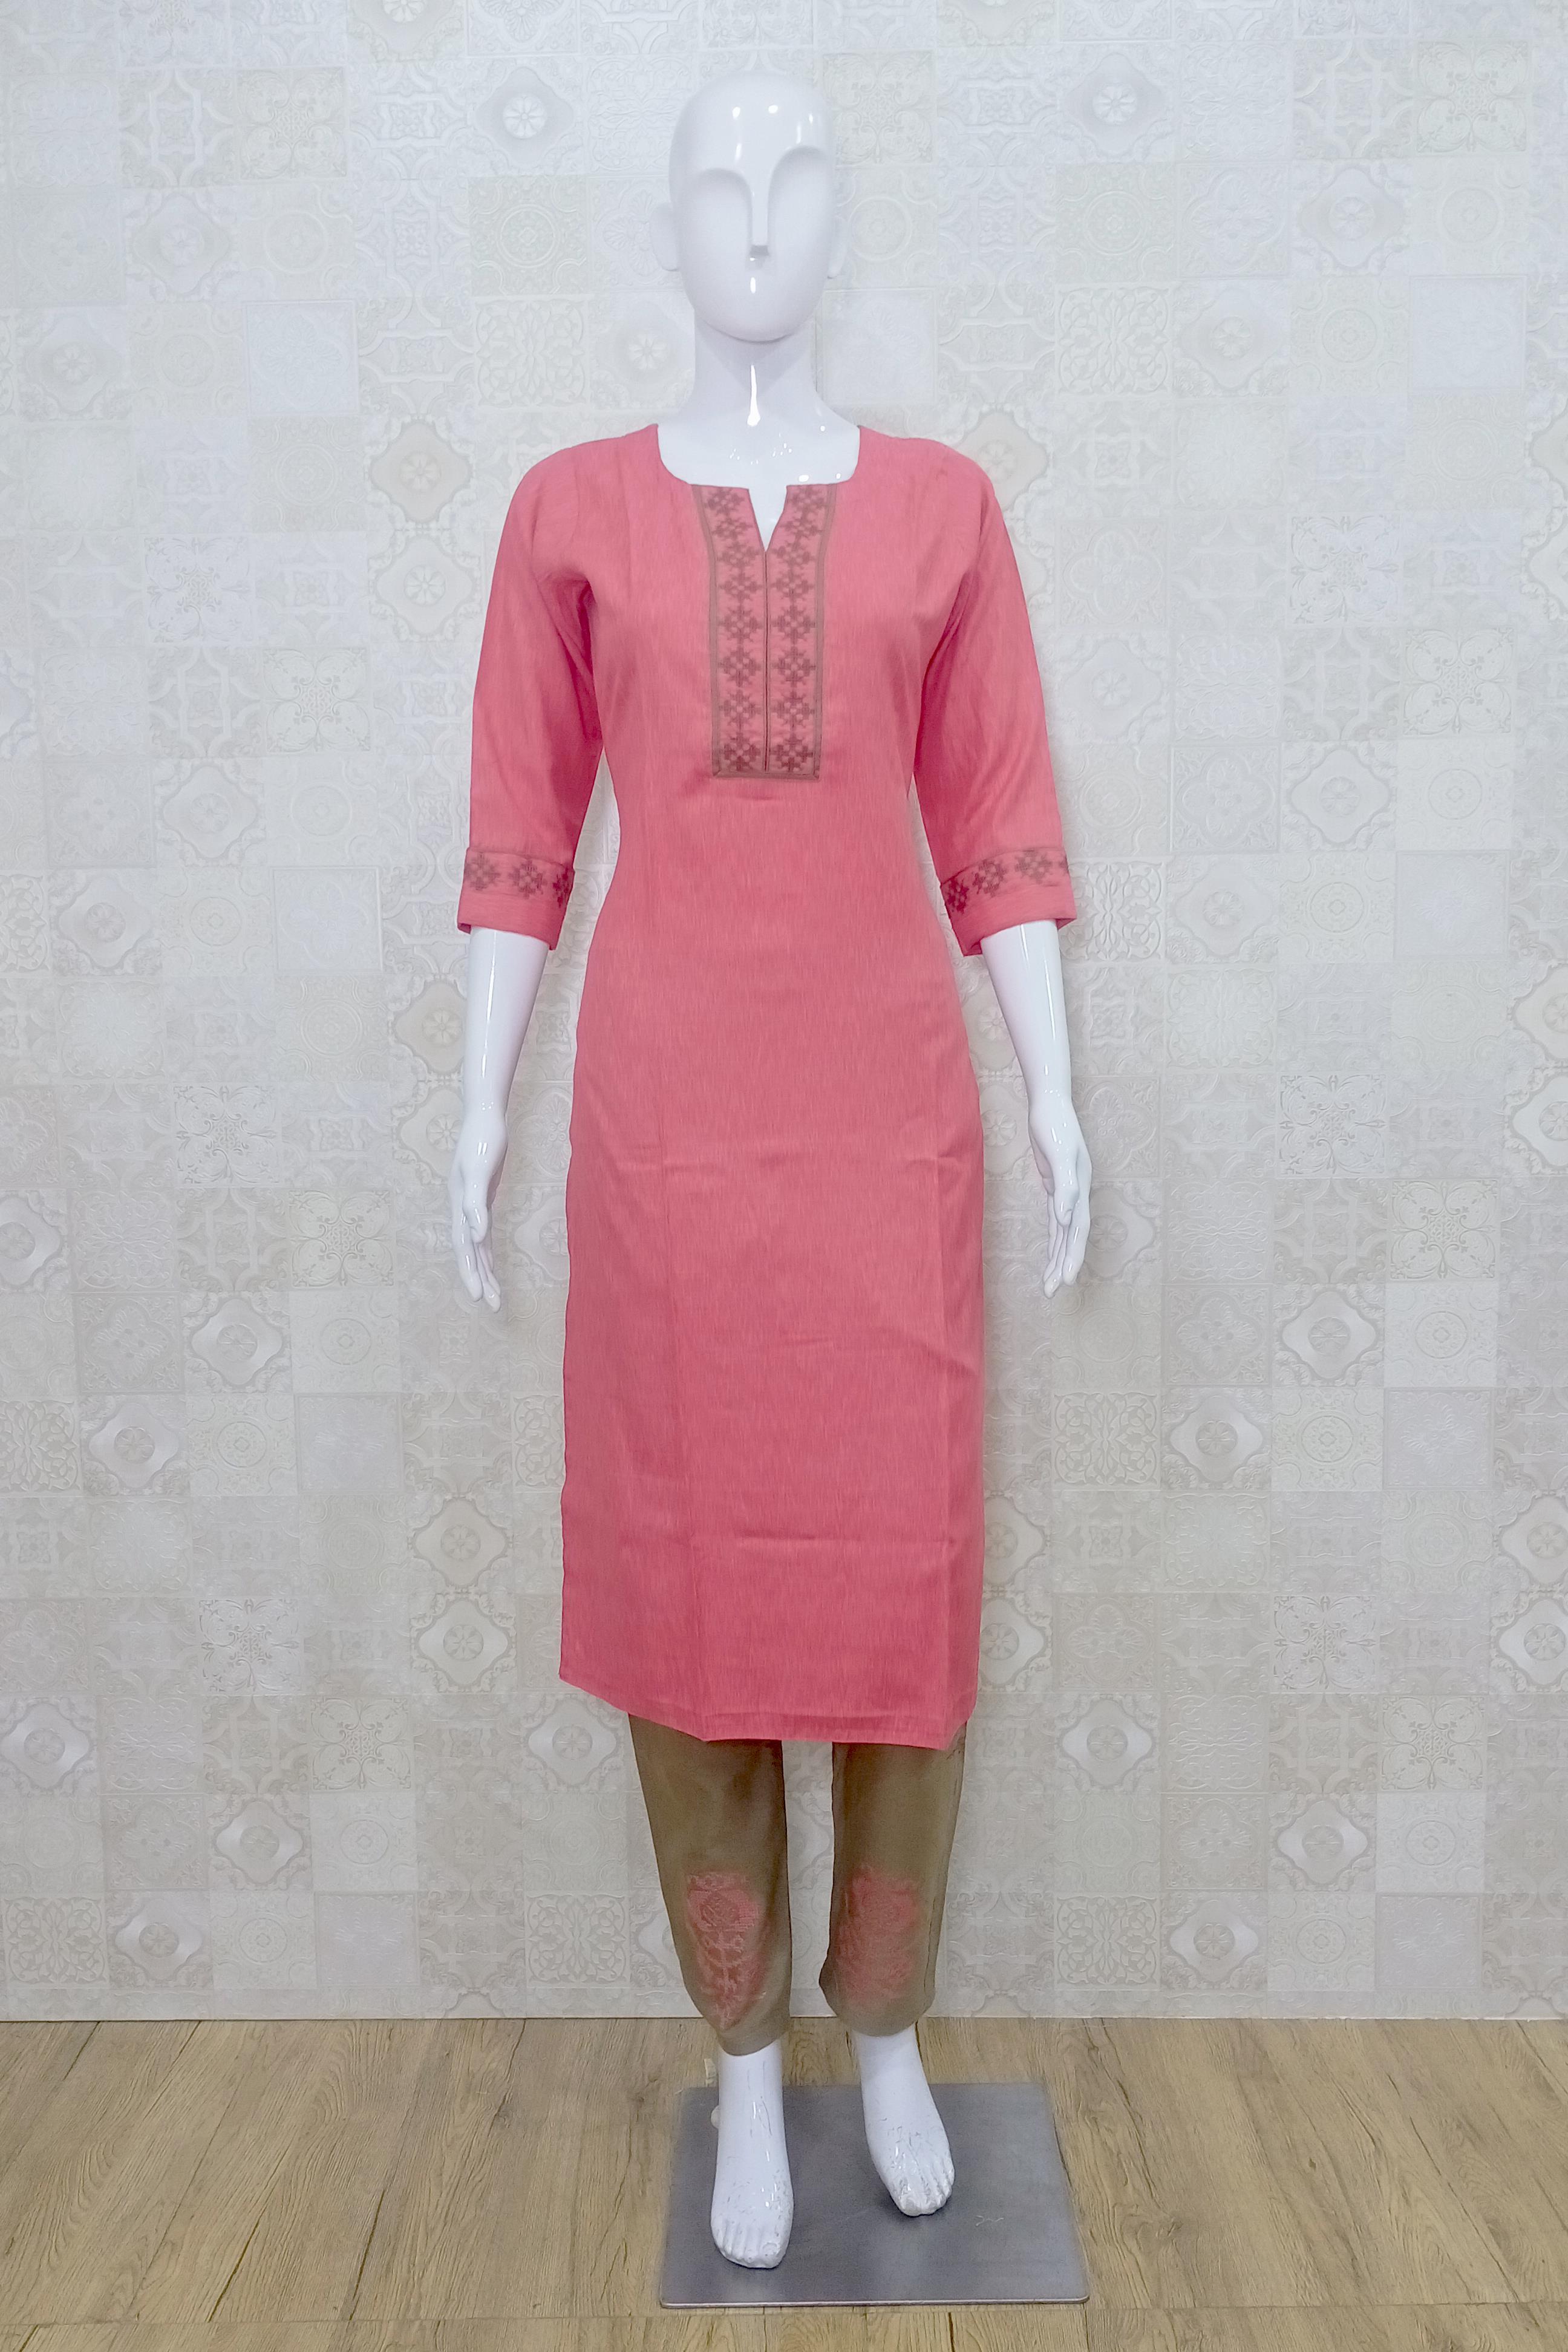 Buy Dhavan Fashion Women's Stitched Anarkali Salwar Suit (Large, Pink Kurti)  at Amazon.in